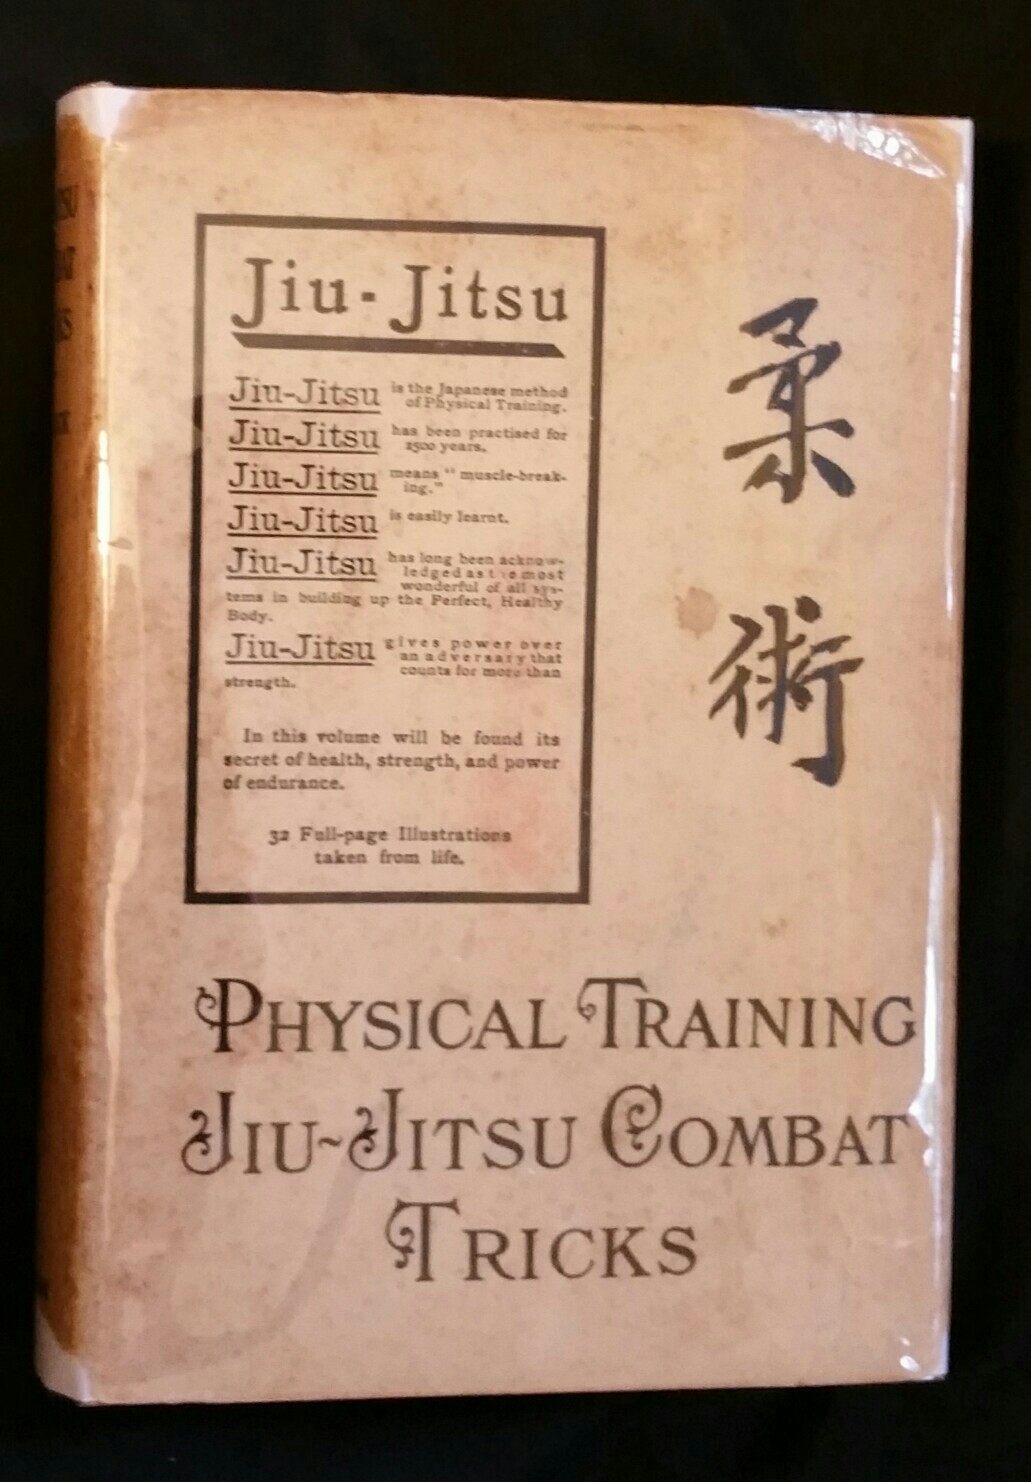 jiujitsu book